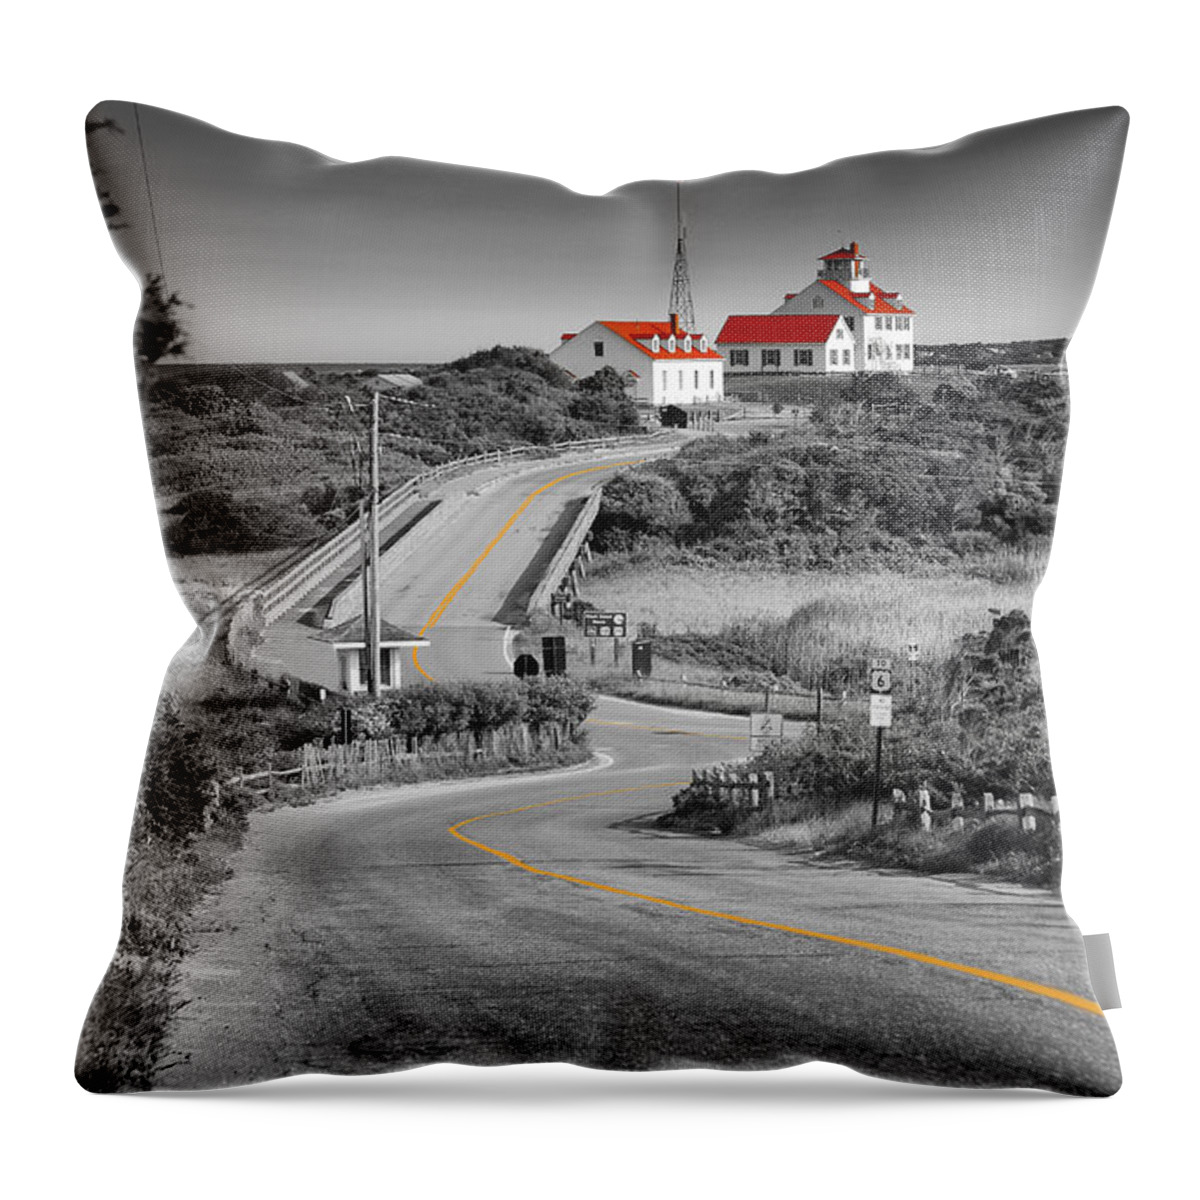 Coast Guard Beach Throw Pillow featuring the photograph Coast Guard Beach by Darius Aniunas